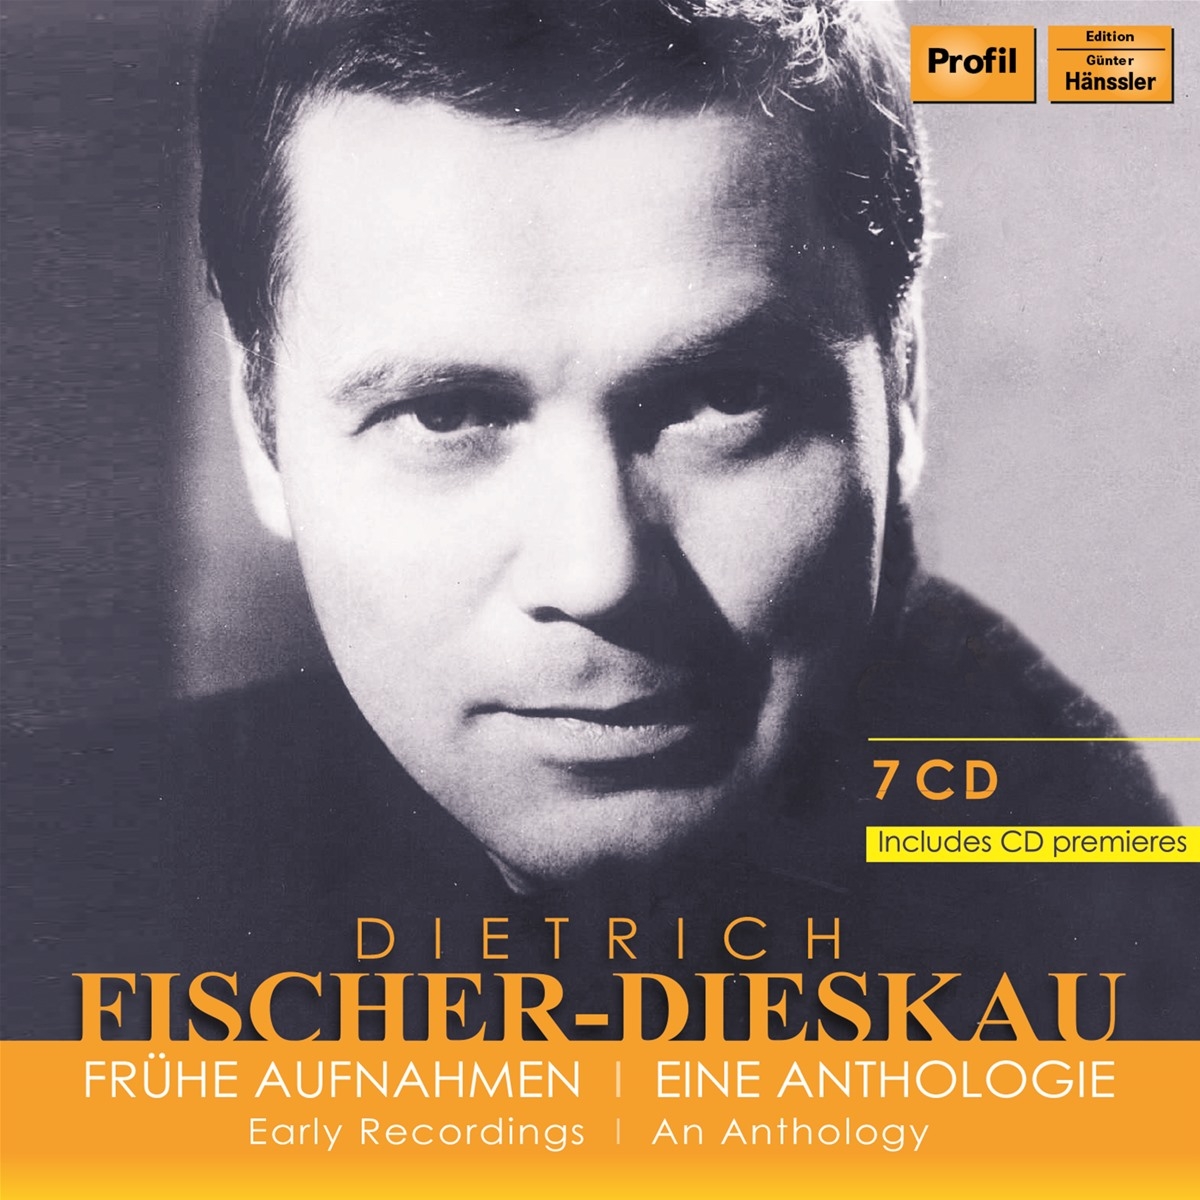 Dietrich Fischer-Dieskau - Early Recordings